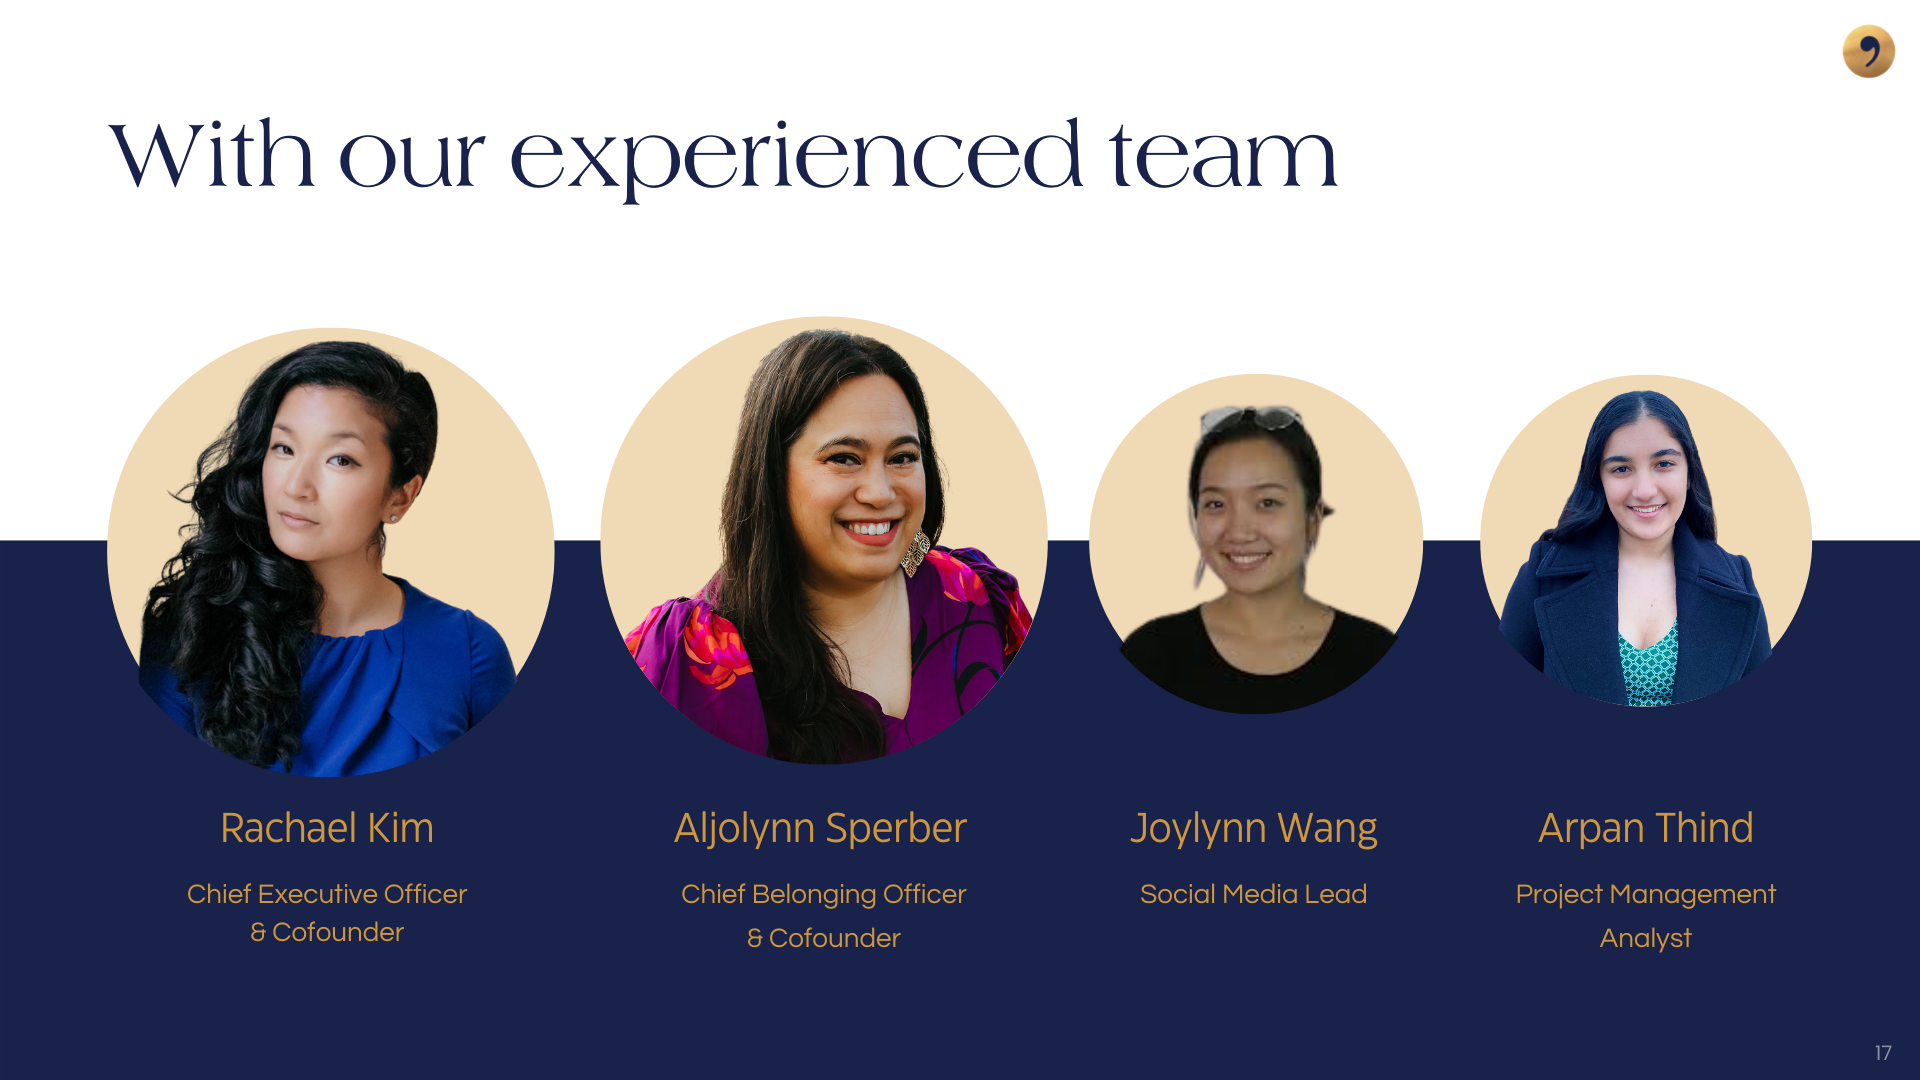 The My Comma team: Rachael Kim, Aljolynn Sperber, Joylynn Wang, and Arpan Thind.